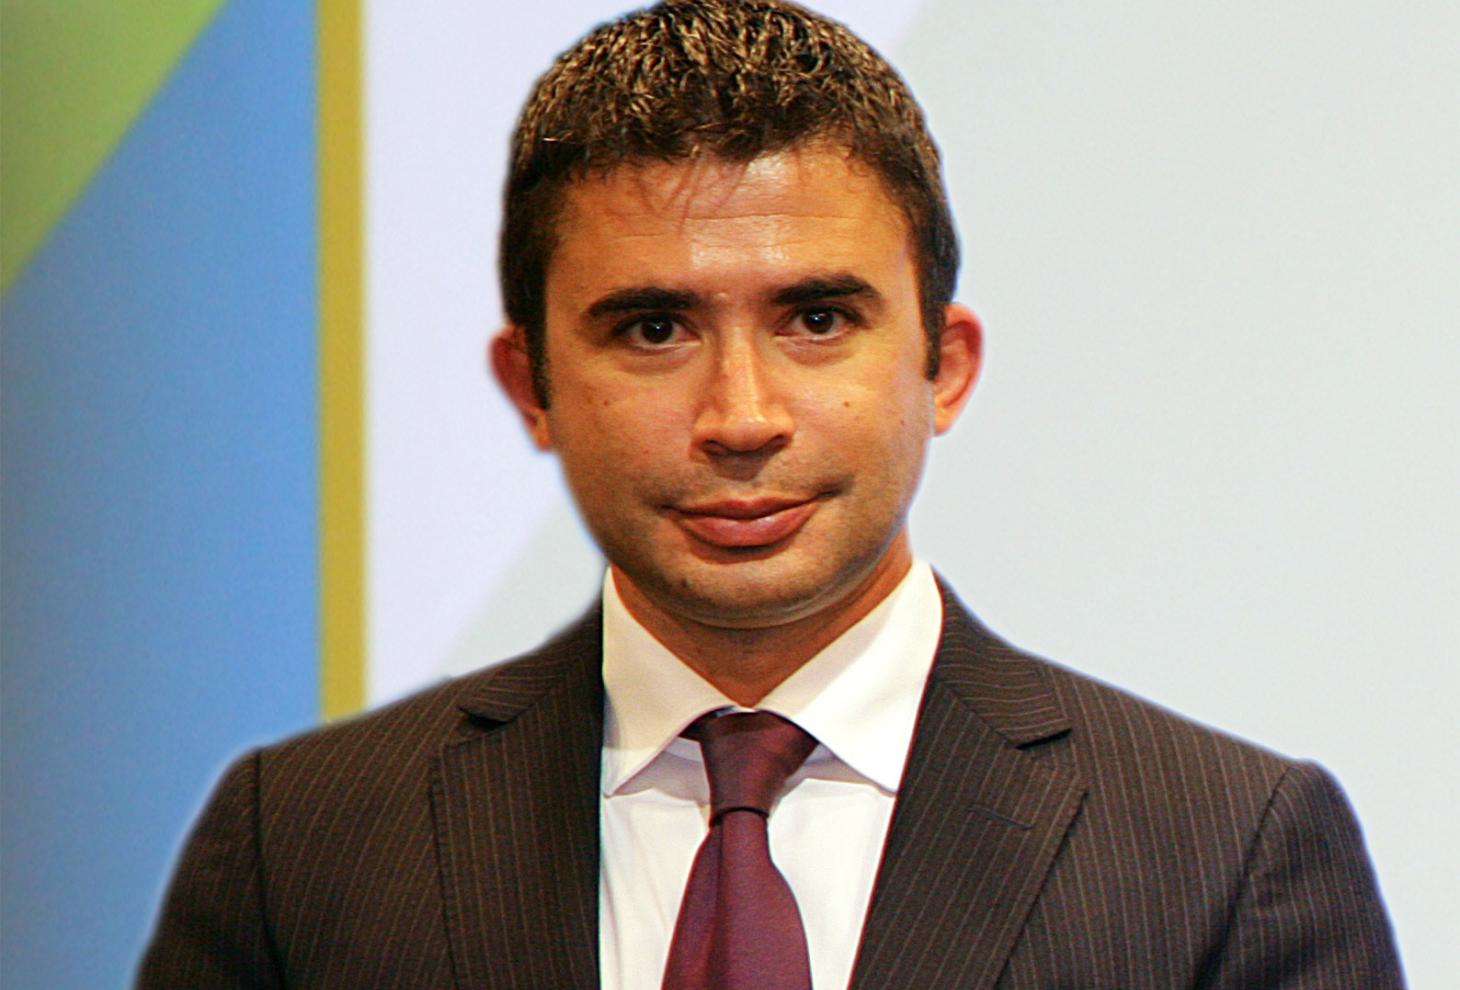 Silvio Paolucci